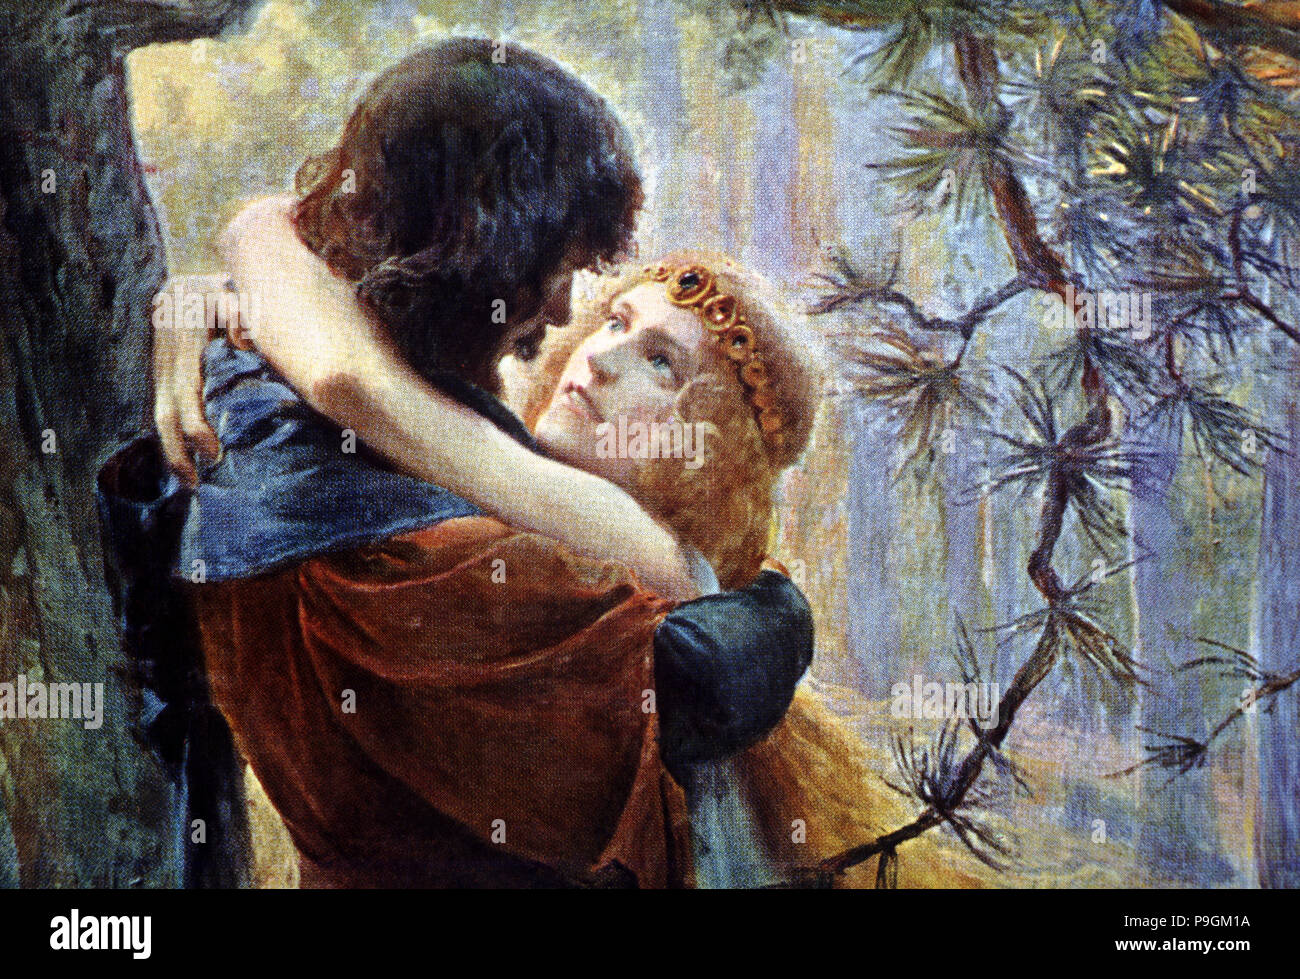 Tristan et Isolda, personnages littéraires de légende médiévale qui symbolisent l'amour impossible. Banque D'Images